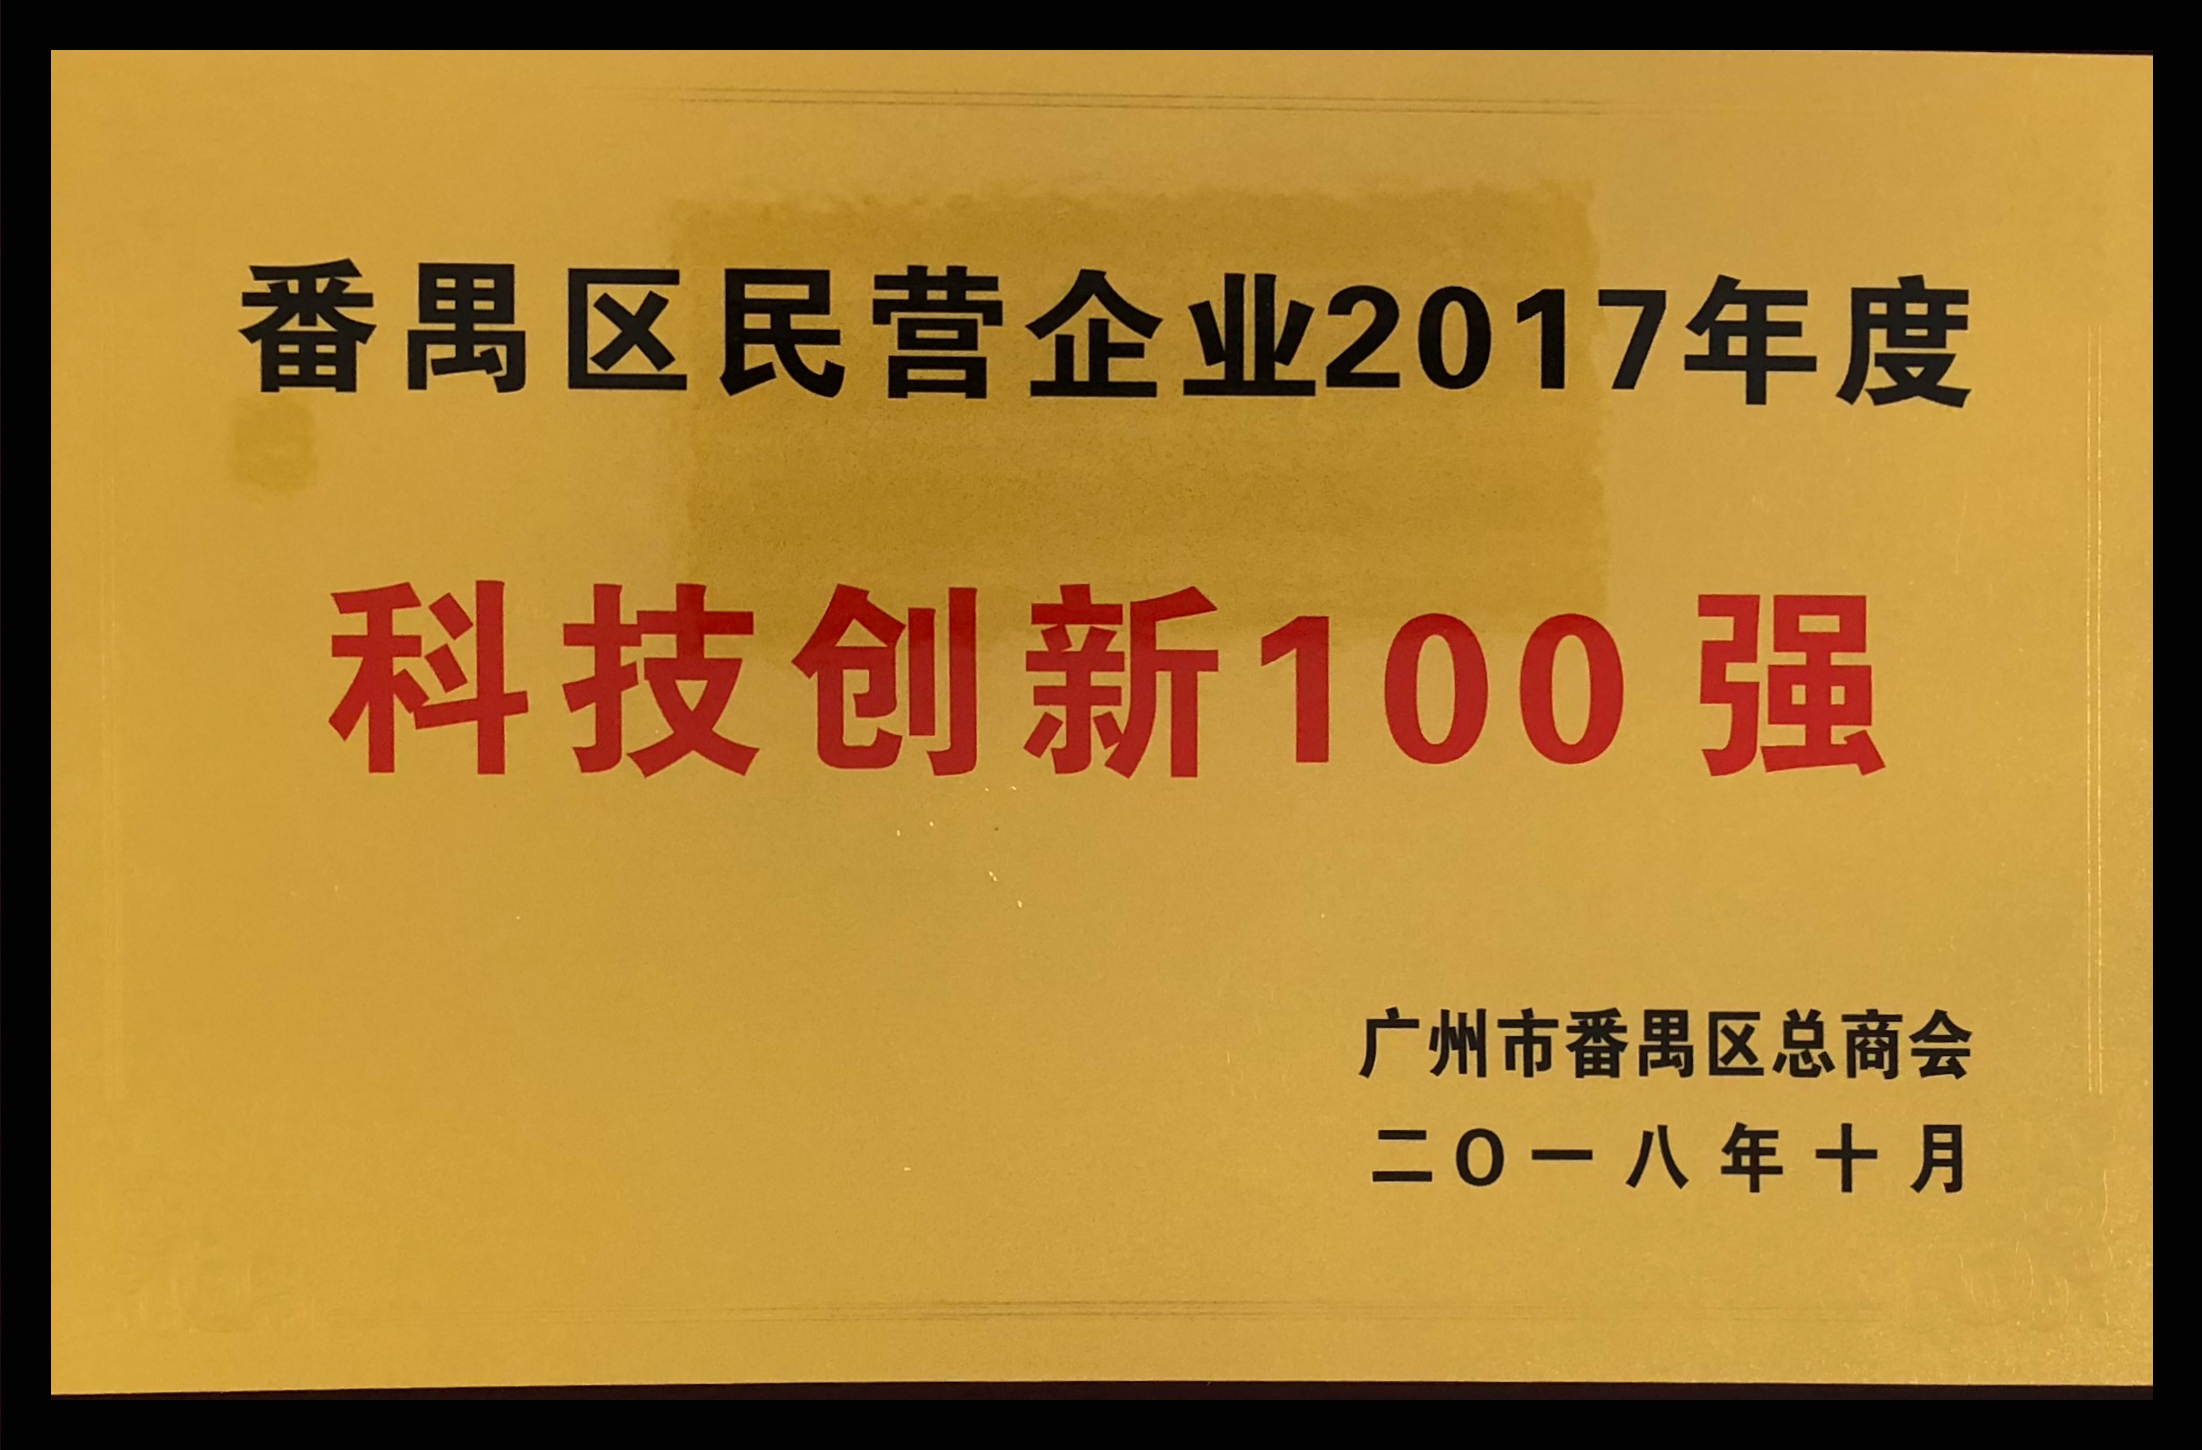 番禺区民营企业2017年度科技创新100强